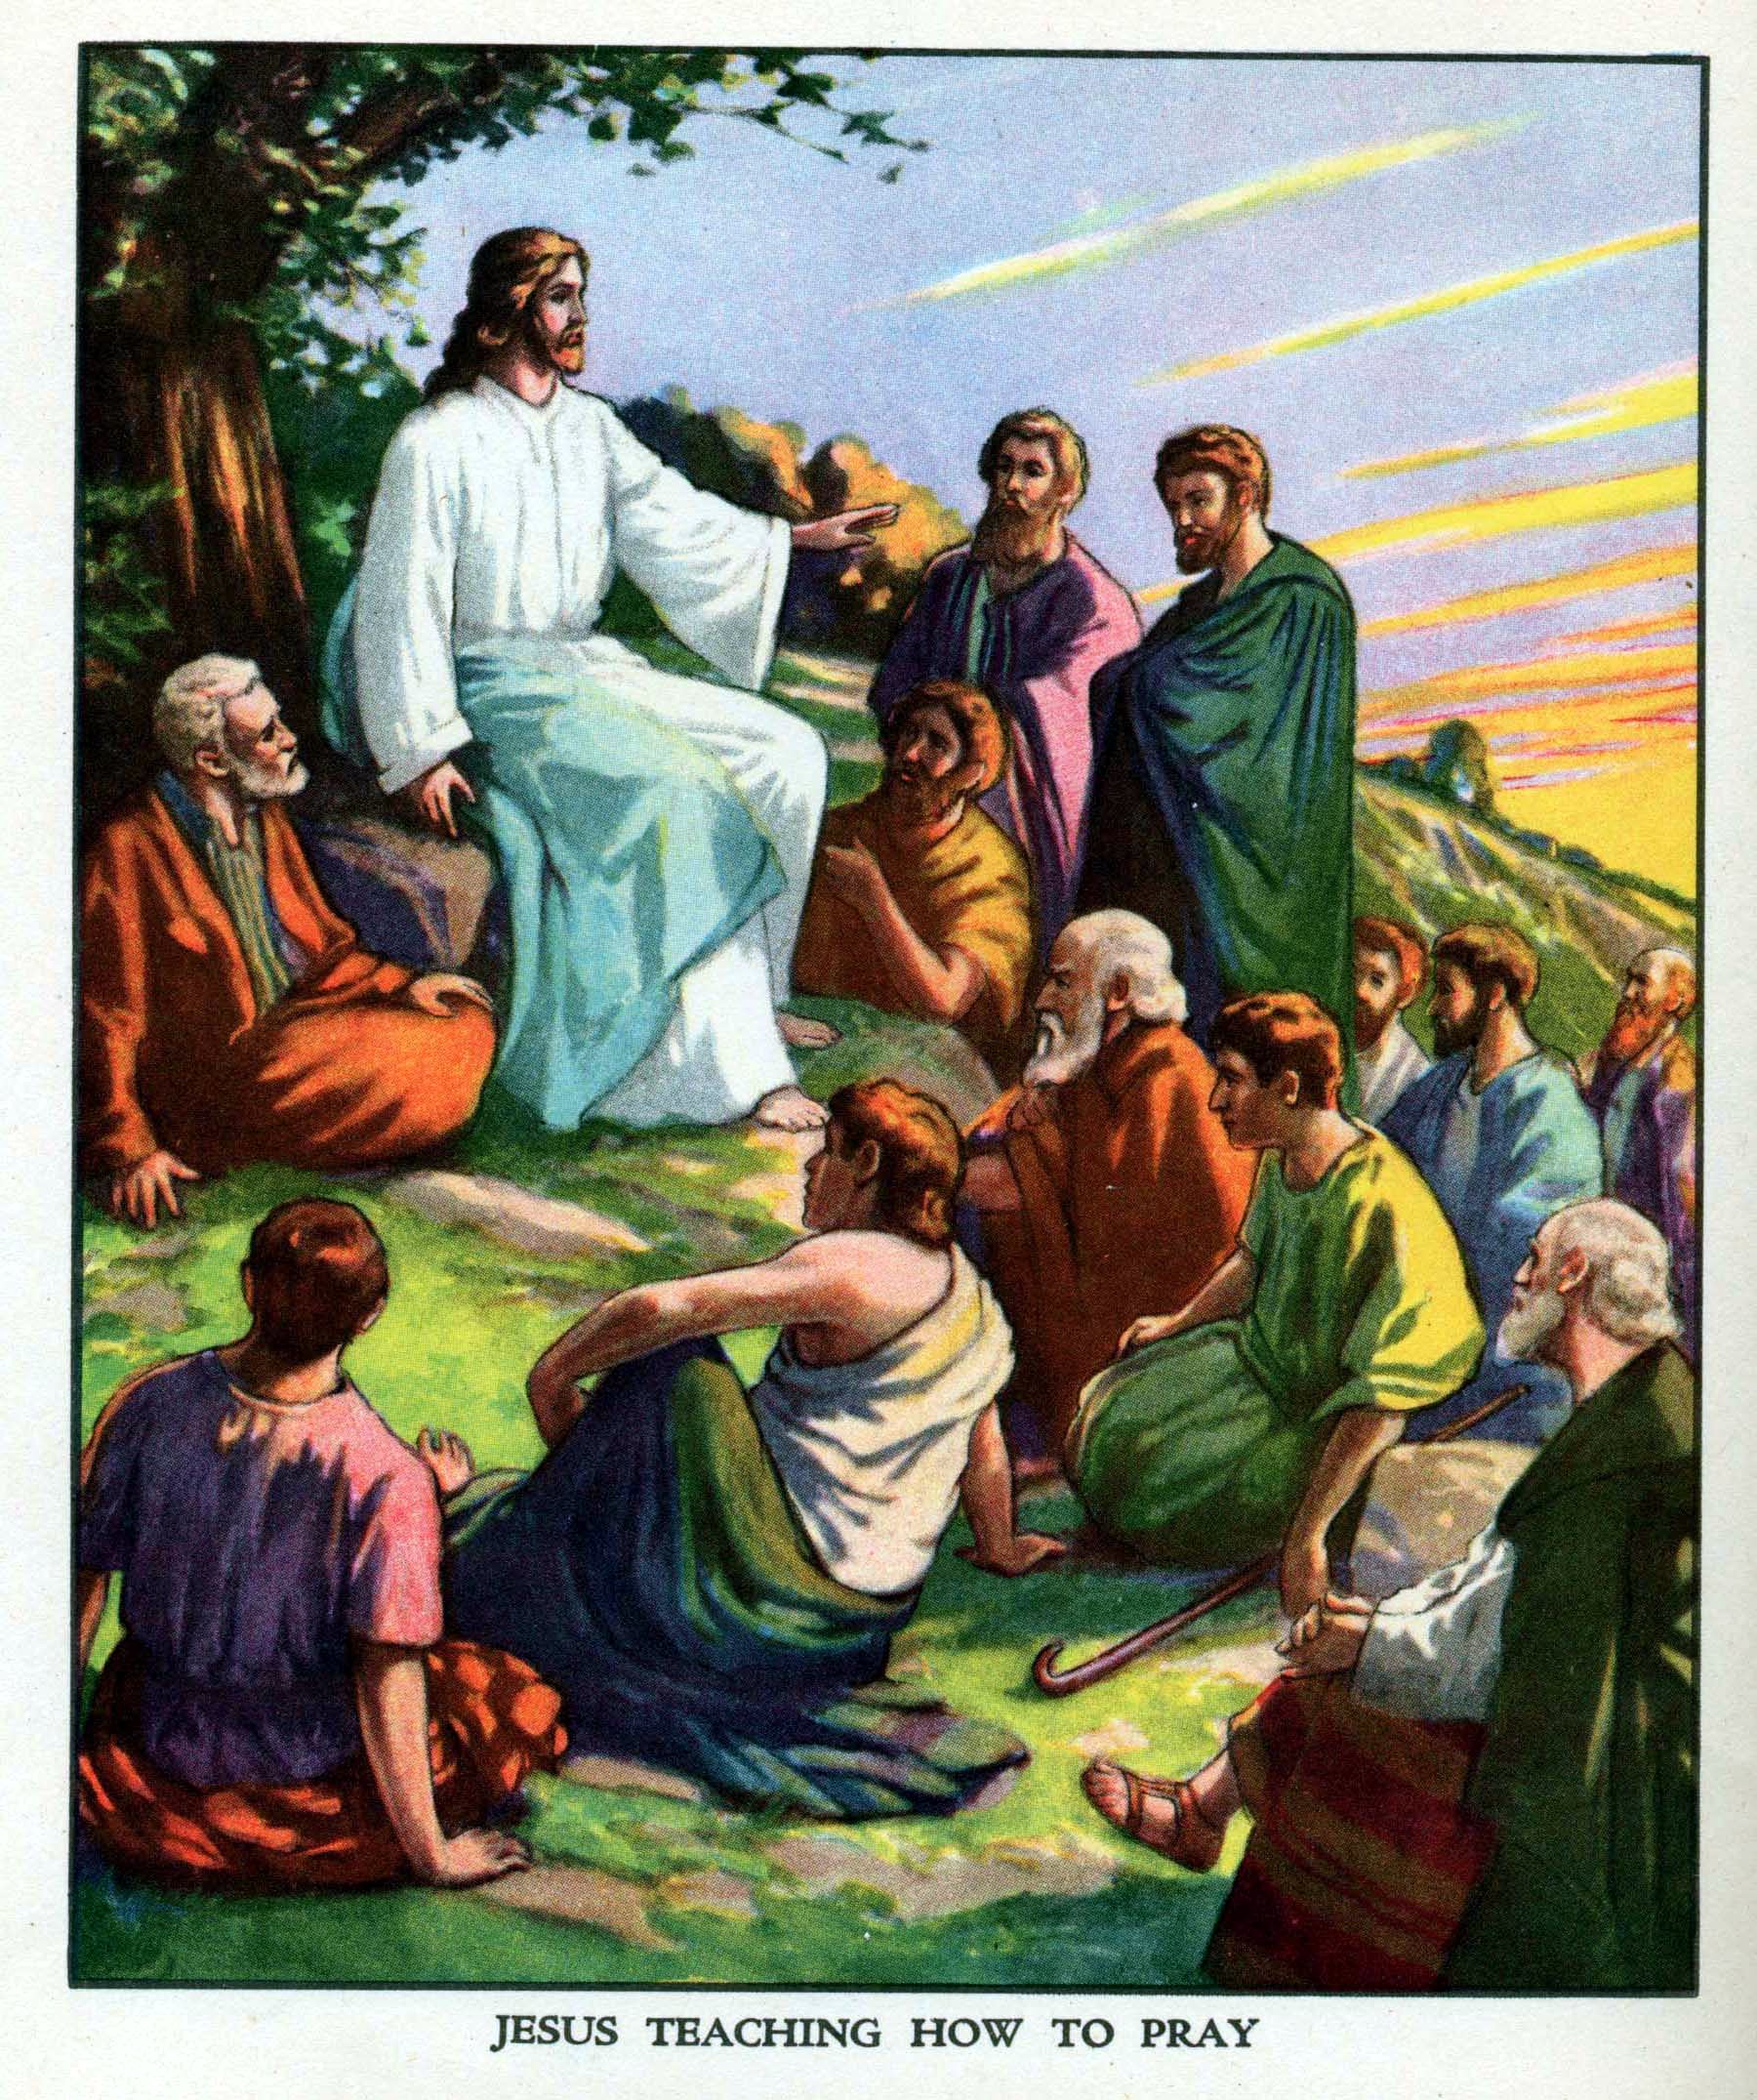 Jesus teaching how to pray